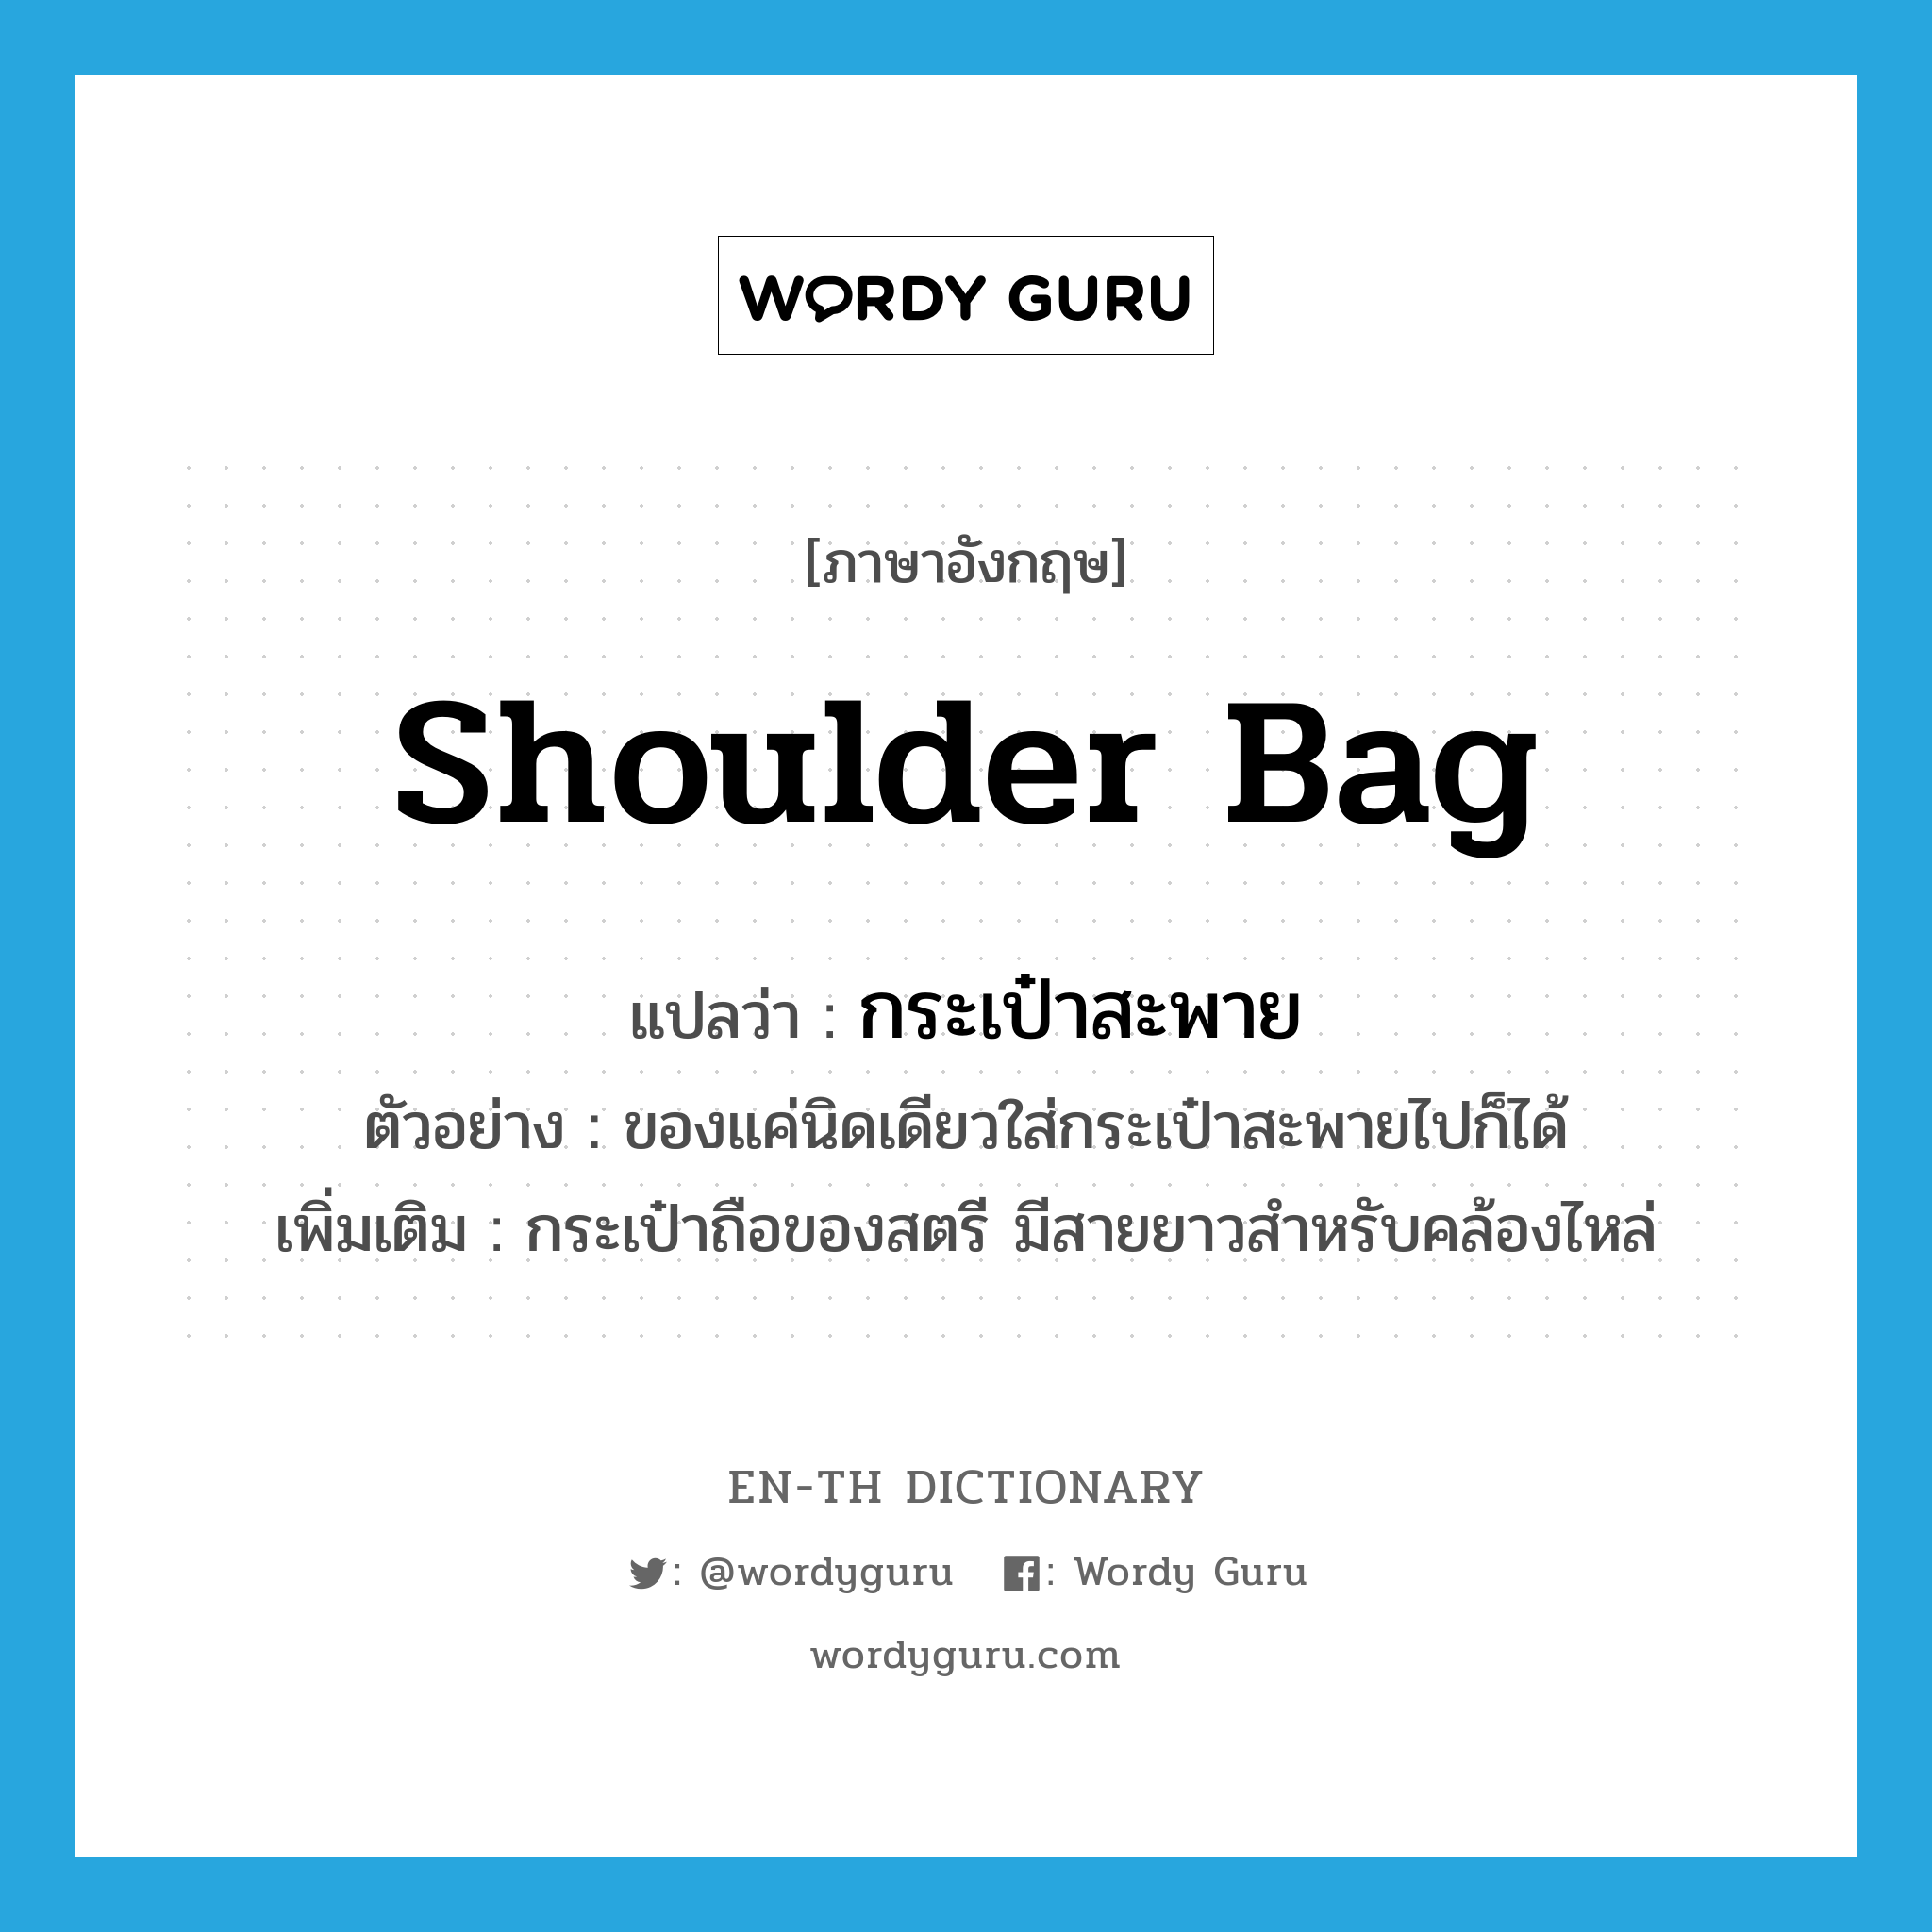 shoulder bag แปลว่า?, คำศัพท์ภาษาอังกฤษ shoulder bag แปลว่า กระเป๋าสะพาย ประเภท N ตัวอย่าง ของแค่นิดเดียวใส่กระเป๋าสะพายไปก็ได้ เพิ่มเติม กระเป๋าถือของสตรี มีสายยาวสำหรับคล้องไหล่ หมวด N